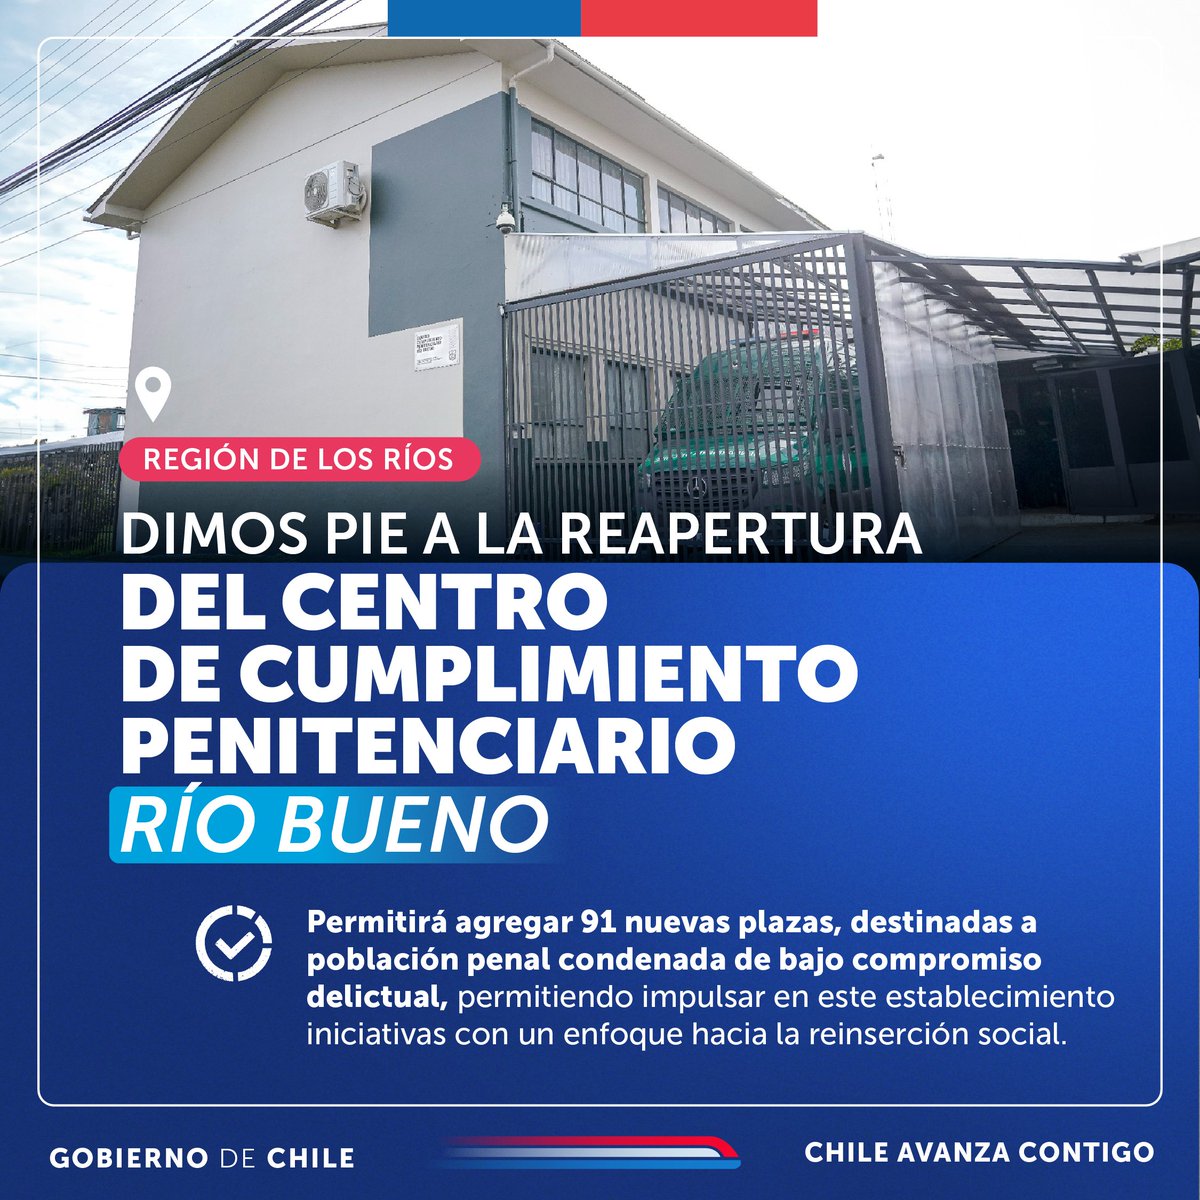 ¡#MásSeguridad para Chile! Esta semana anunciamos la reapertura del Centro de Cumplimiento Penitenciario de Río Bueno. Esto es un significativo reforzamiento de los sistemas de seguridad para la Región de los Ríos✅